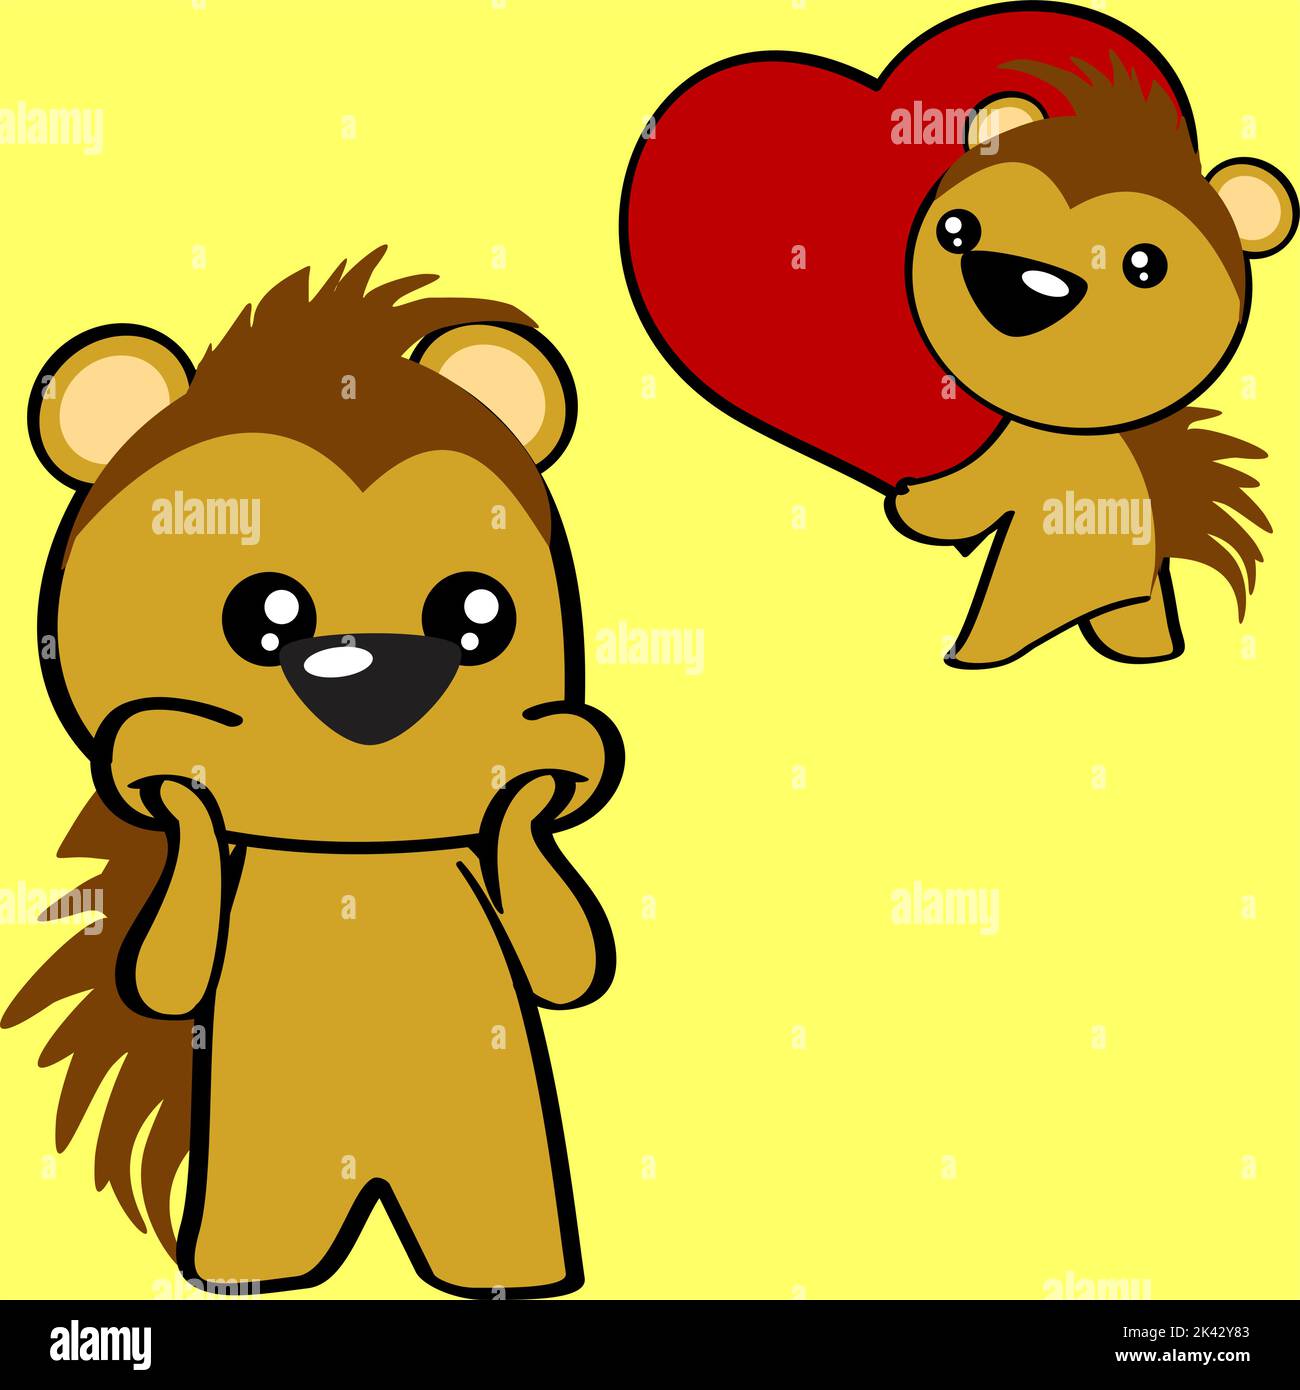 chibi kleines Baby Stachelschwein Cartoon hält valentine rotes Herz Illustration Pack im Vektor-Format Stock Vektor